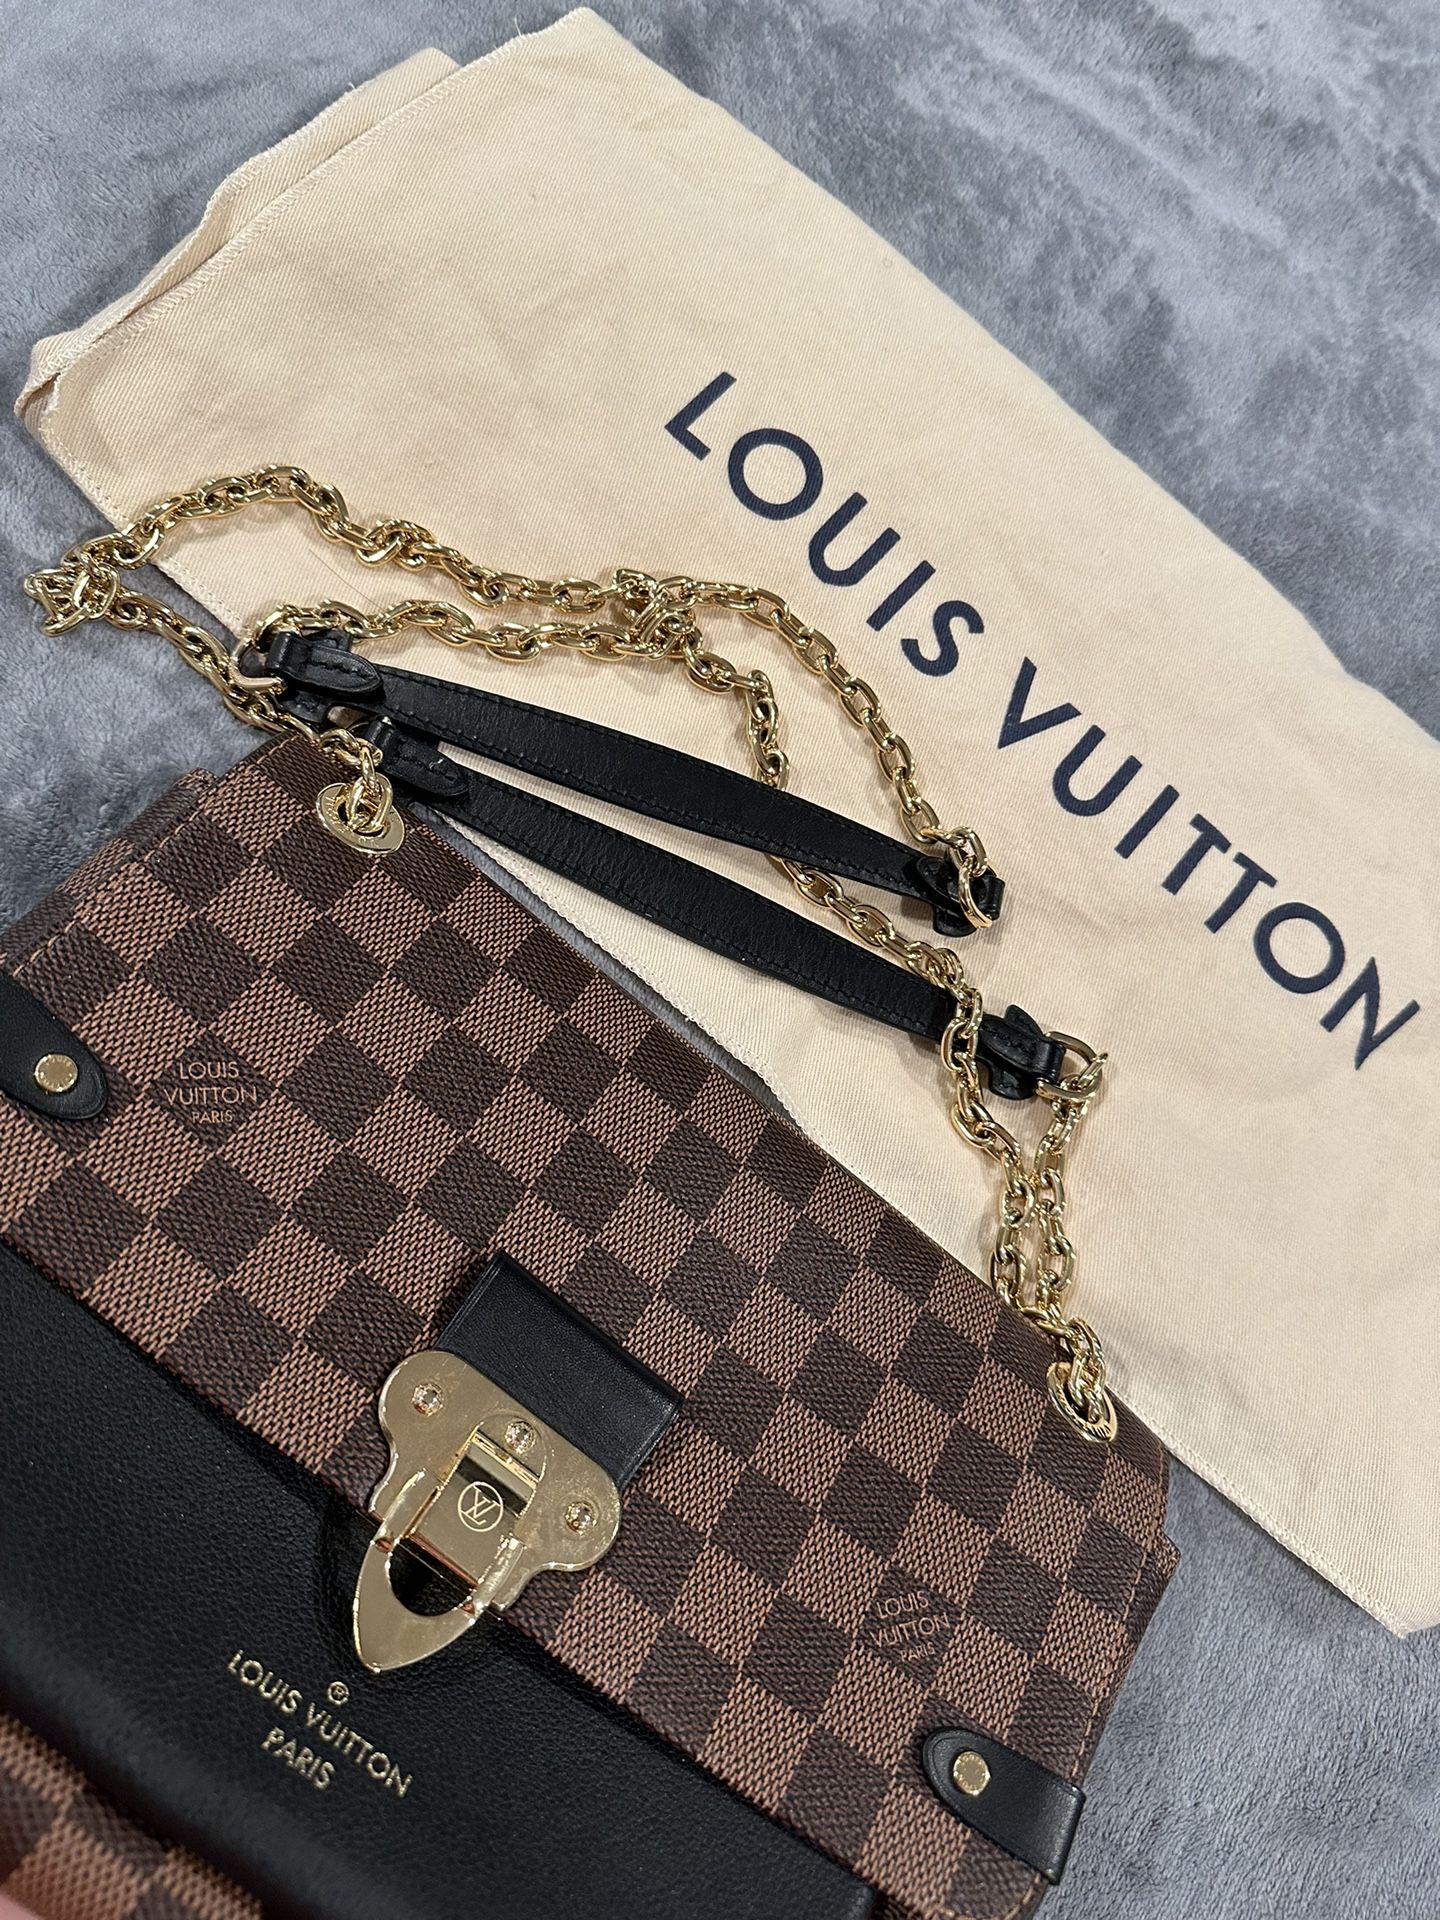 Bag Louis Vuitton 